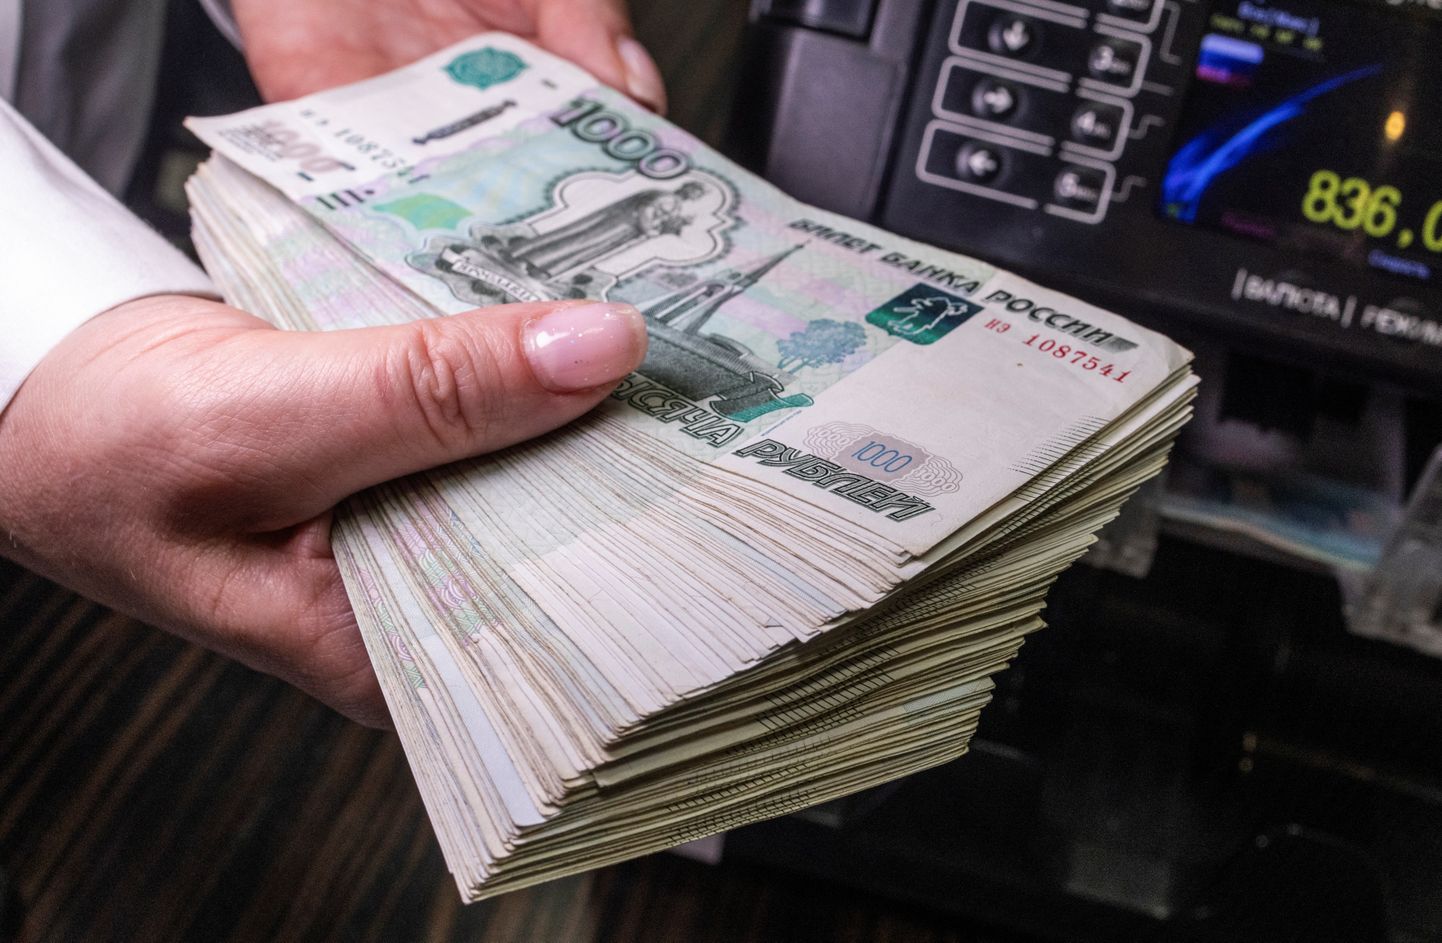 Venemaa kodanikud võtavad hoogsalt kodulaene ka selleks, et investeerida kiiresti väärtust kaotavaid rublasid kinnisvarasse. Vene rubla on viimase aastaga kaotanud euro suhtes ligi veerandi oma väärtusest.